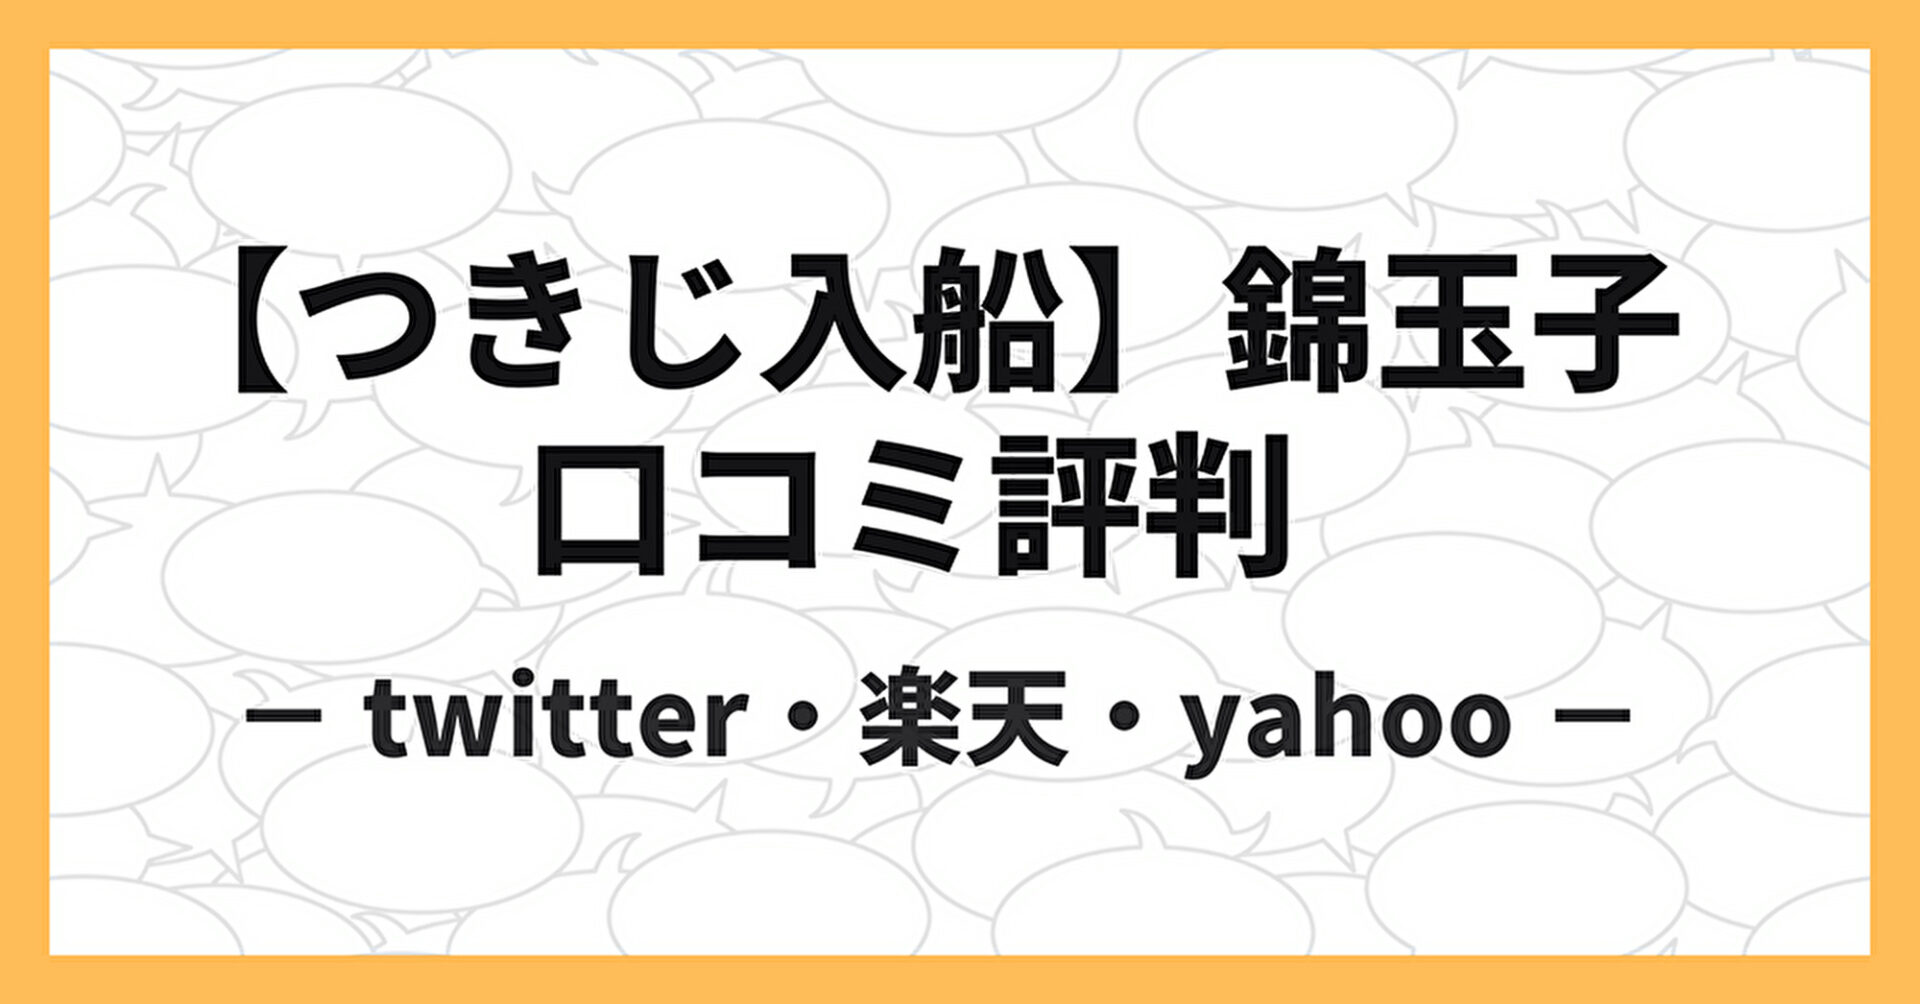 つきじ入船の錦玉子について、楽天・yahoo・twitterの口コミを紹介。